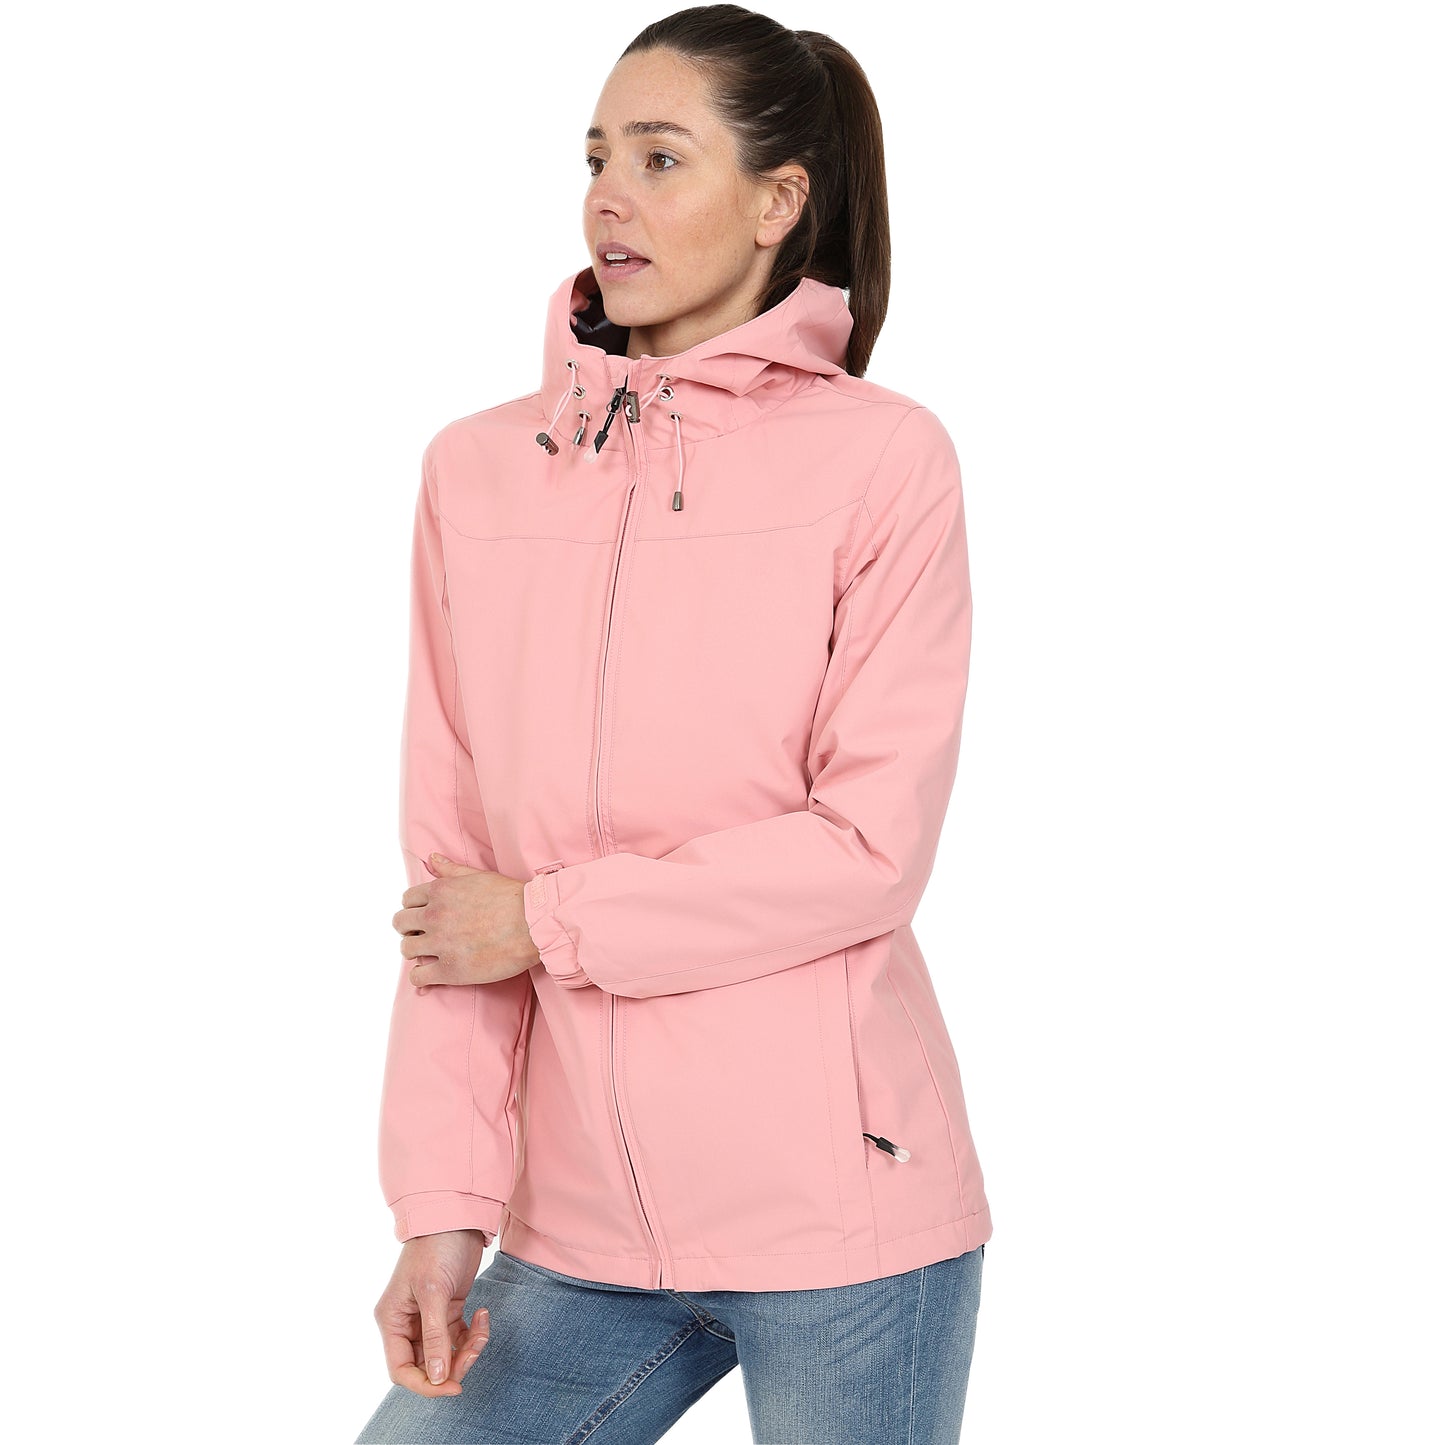 Ladies Waterproof Rain Jacket - Pink